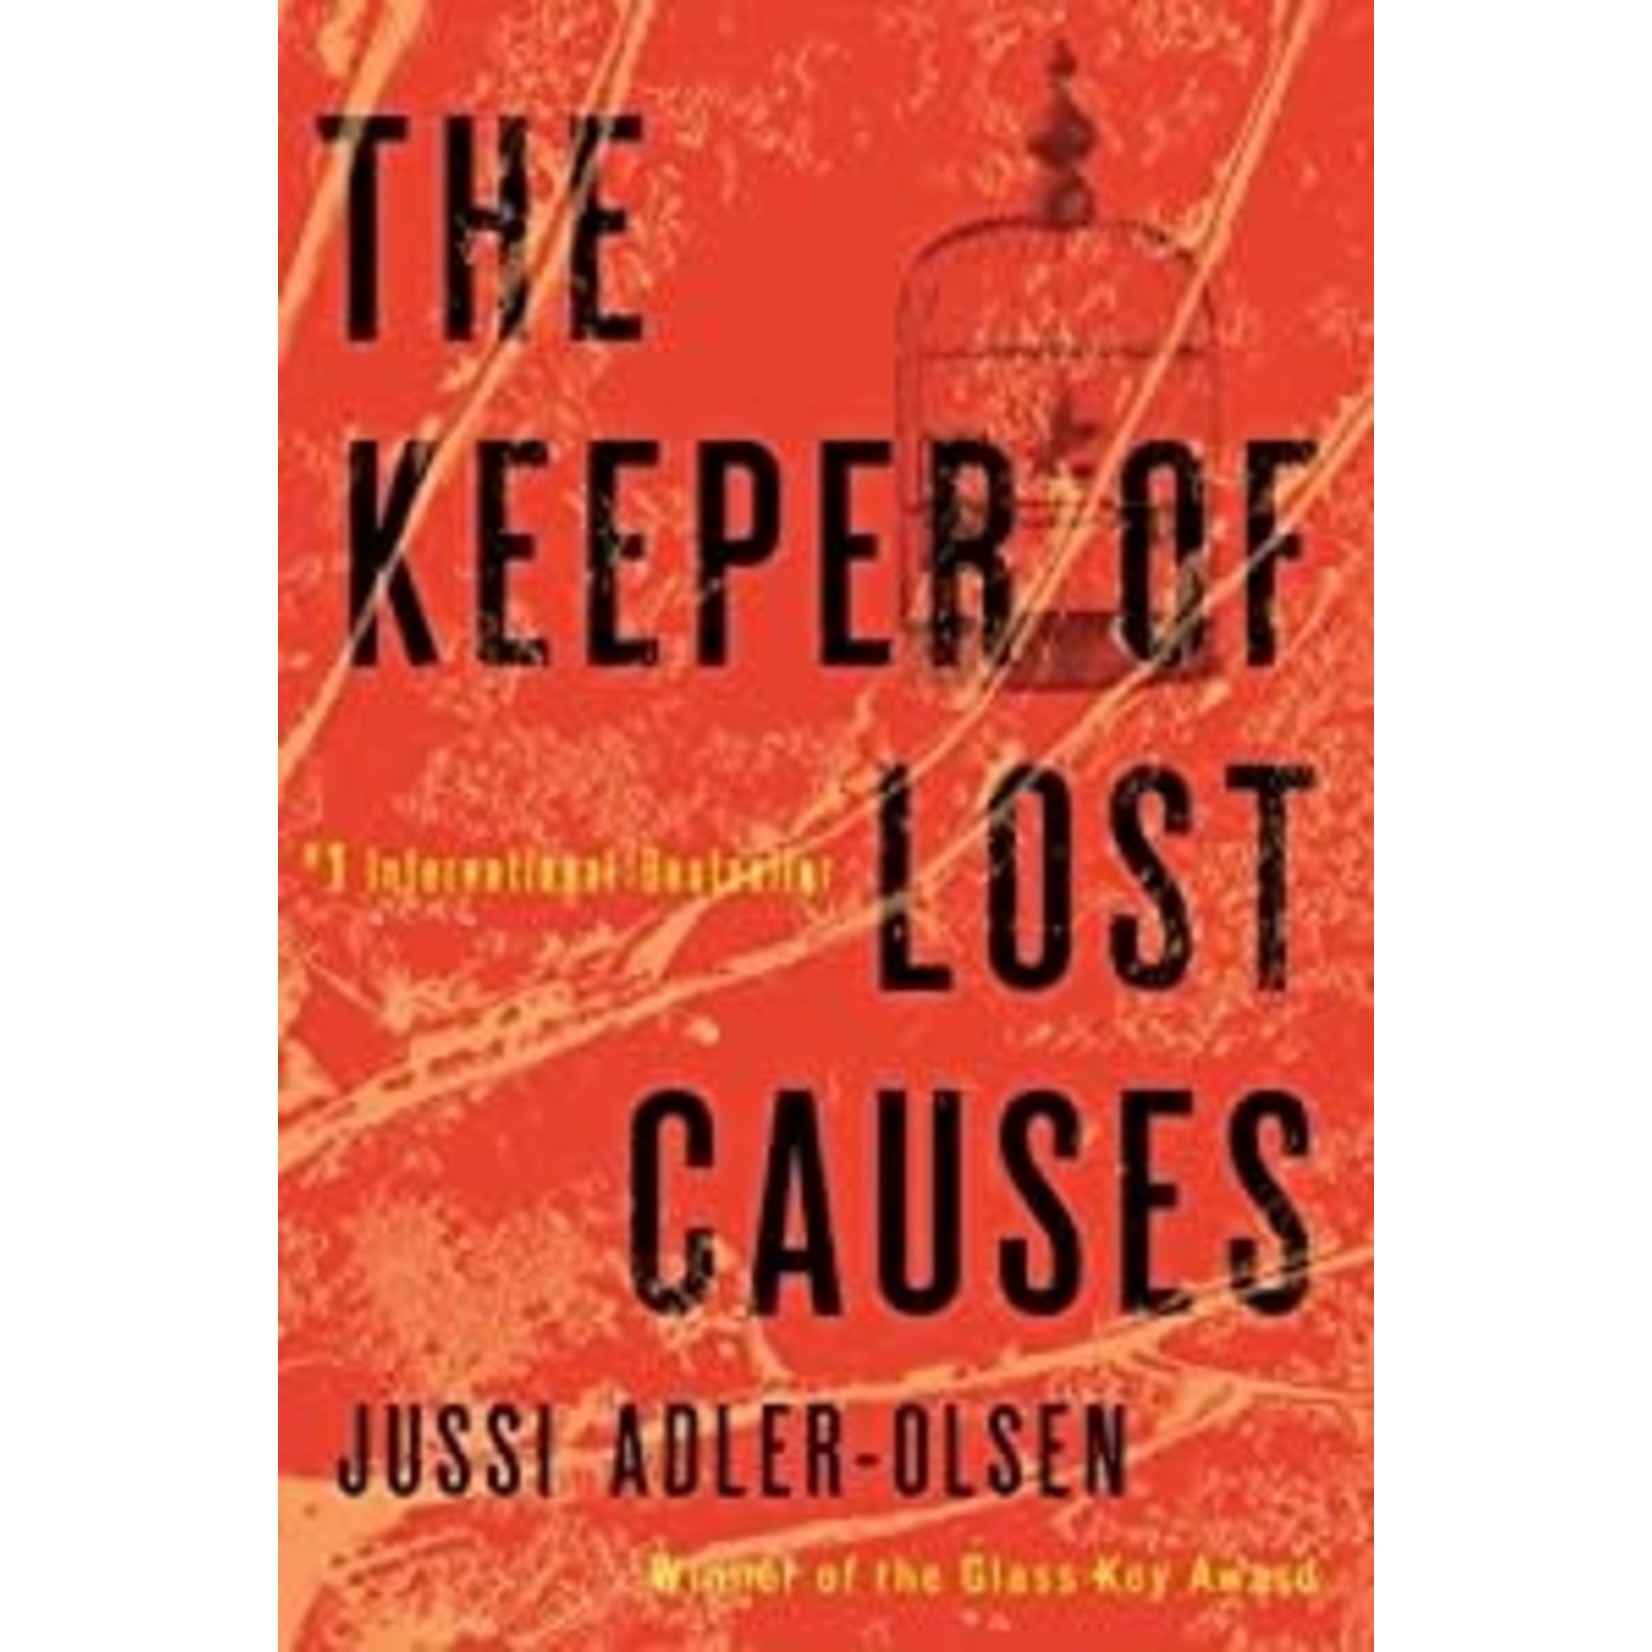 Adler-Olsen, Jussi Adler-Olsen, Jussi - The Keeper of Lost Causes: A Department Q Novel (Hardcover)